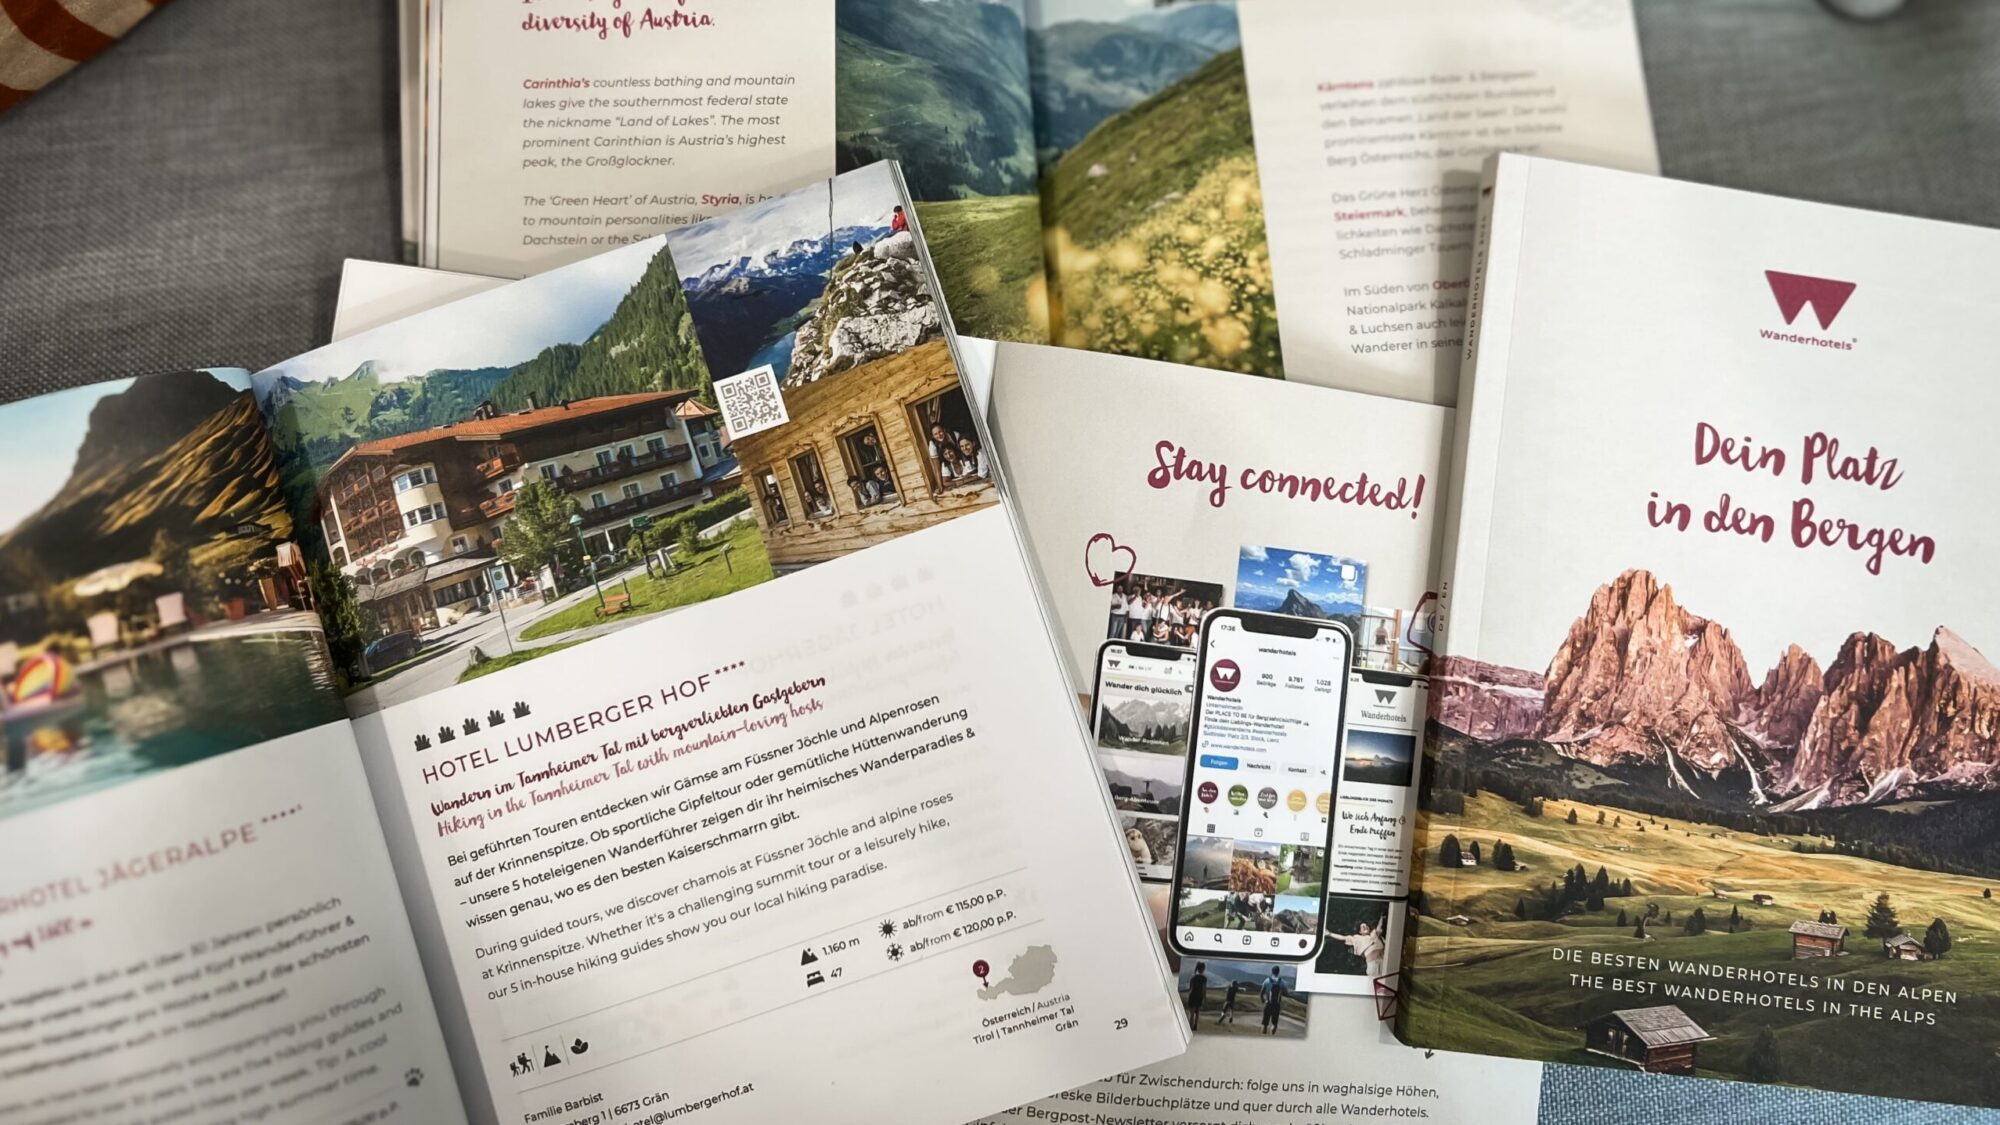 Der neue Hotelguide der Wanderhotels zeigt die besten alpinen Wanderhotels und Wanderregionen